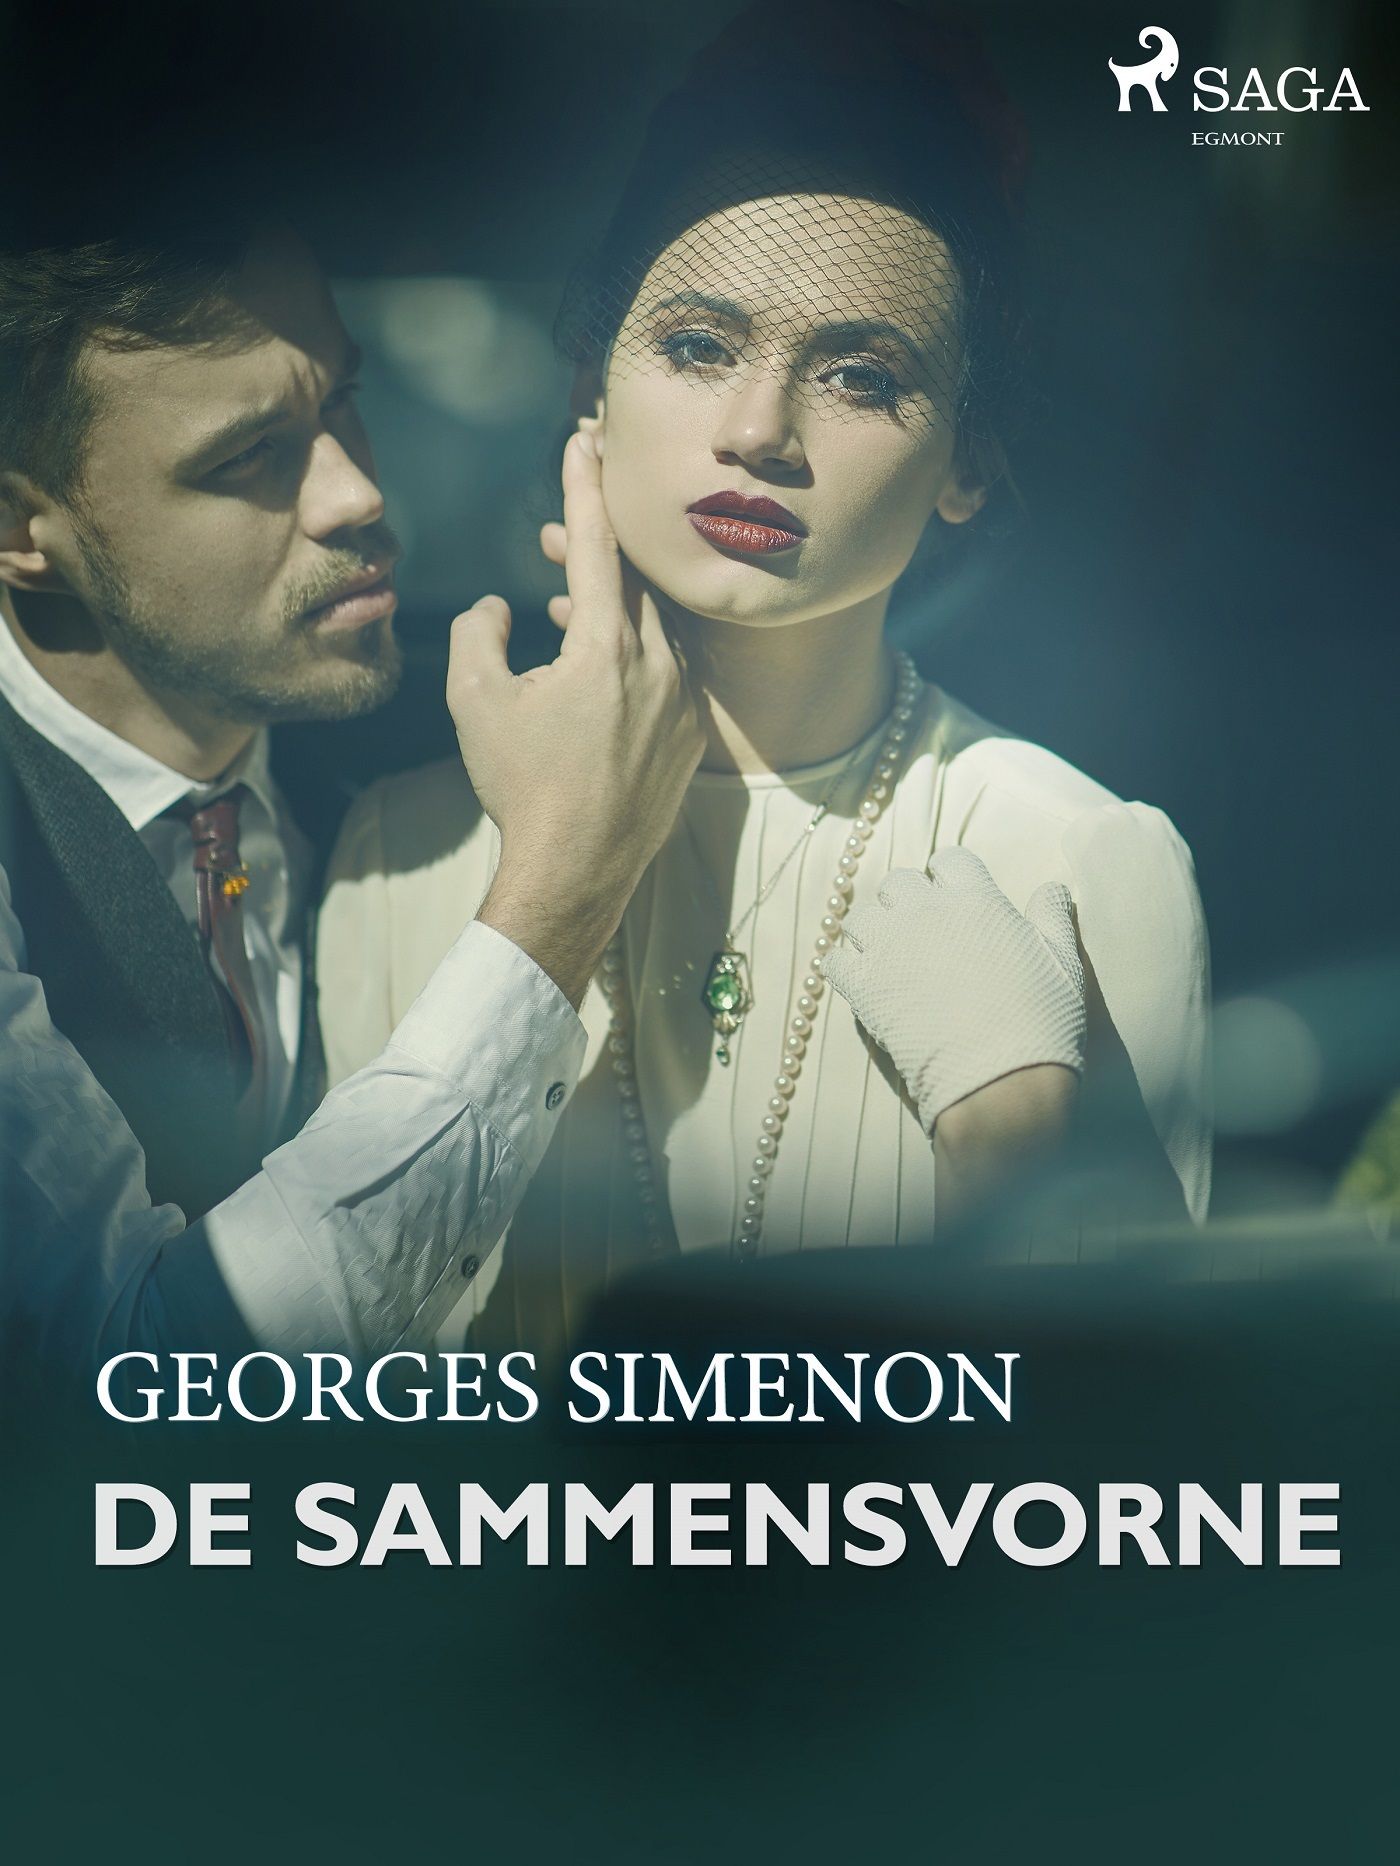 De sammensvorne, eBook by Georges Simenon